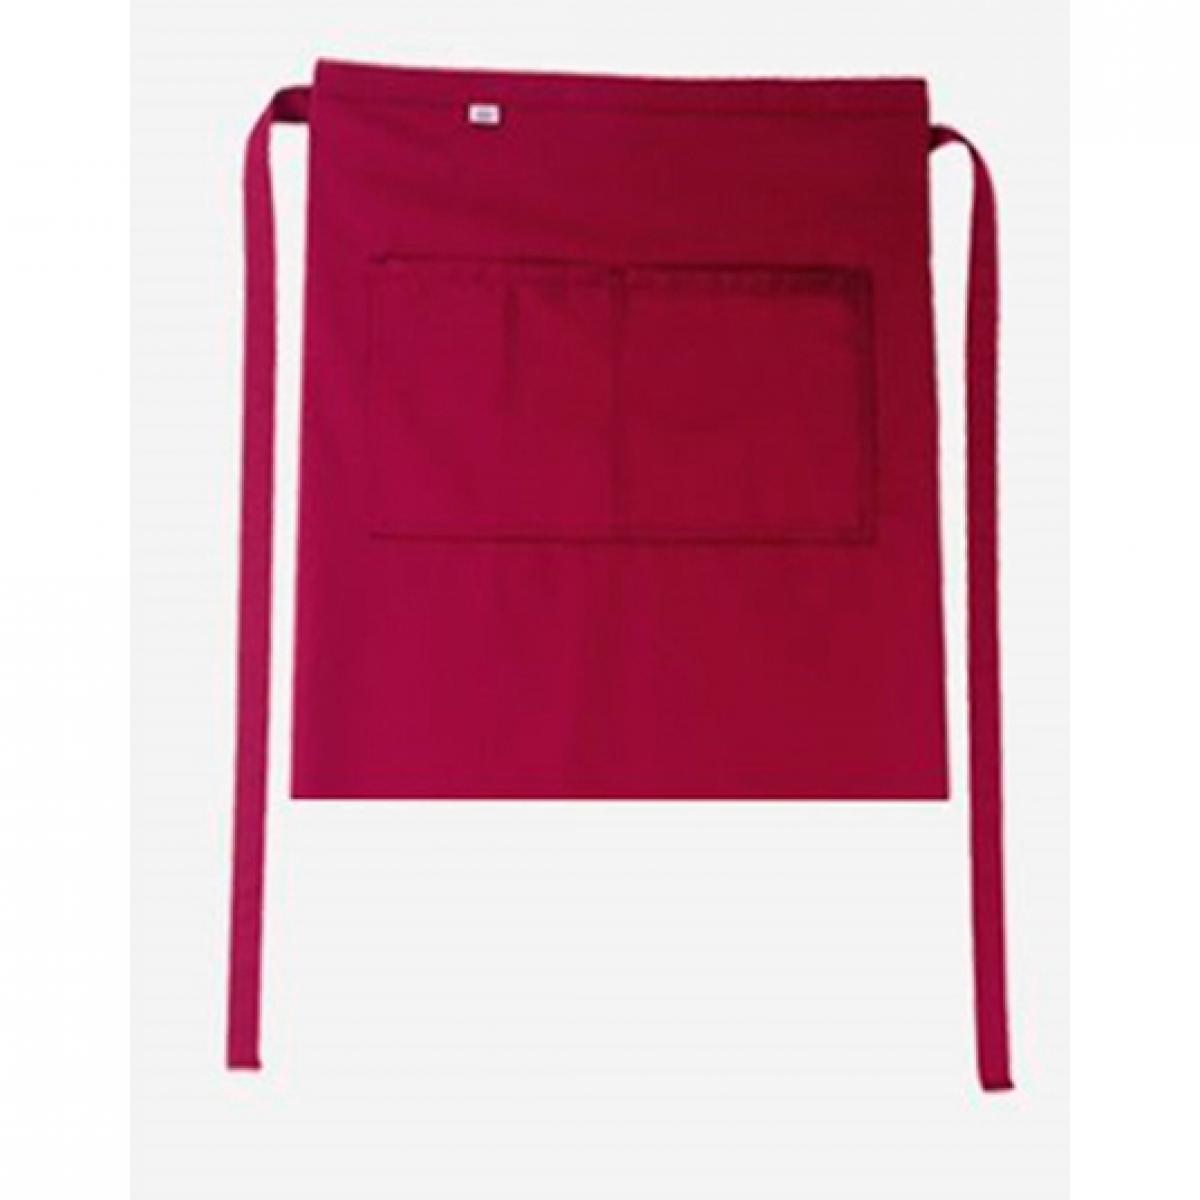 Hersteller: CG Workwear Herstellernummer: 01262-01 Artikelbezeichnung: Bistroschürze Roma Bag 50 x 78 cm Farbe: Cherry